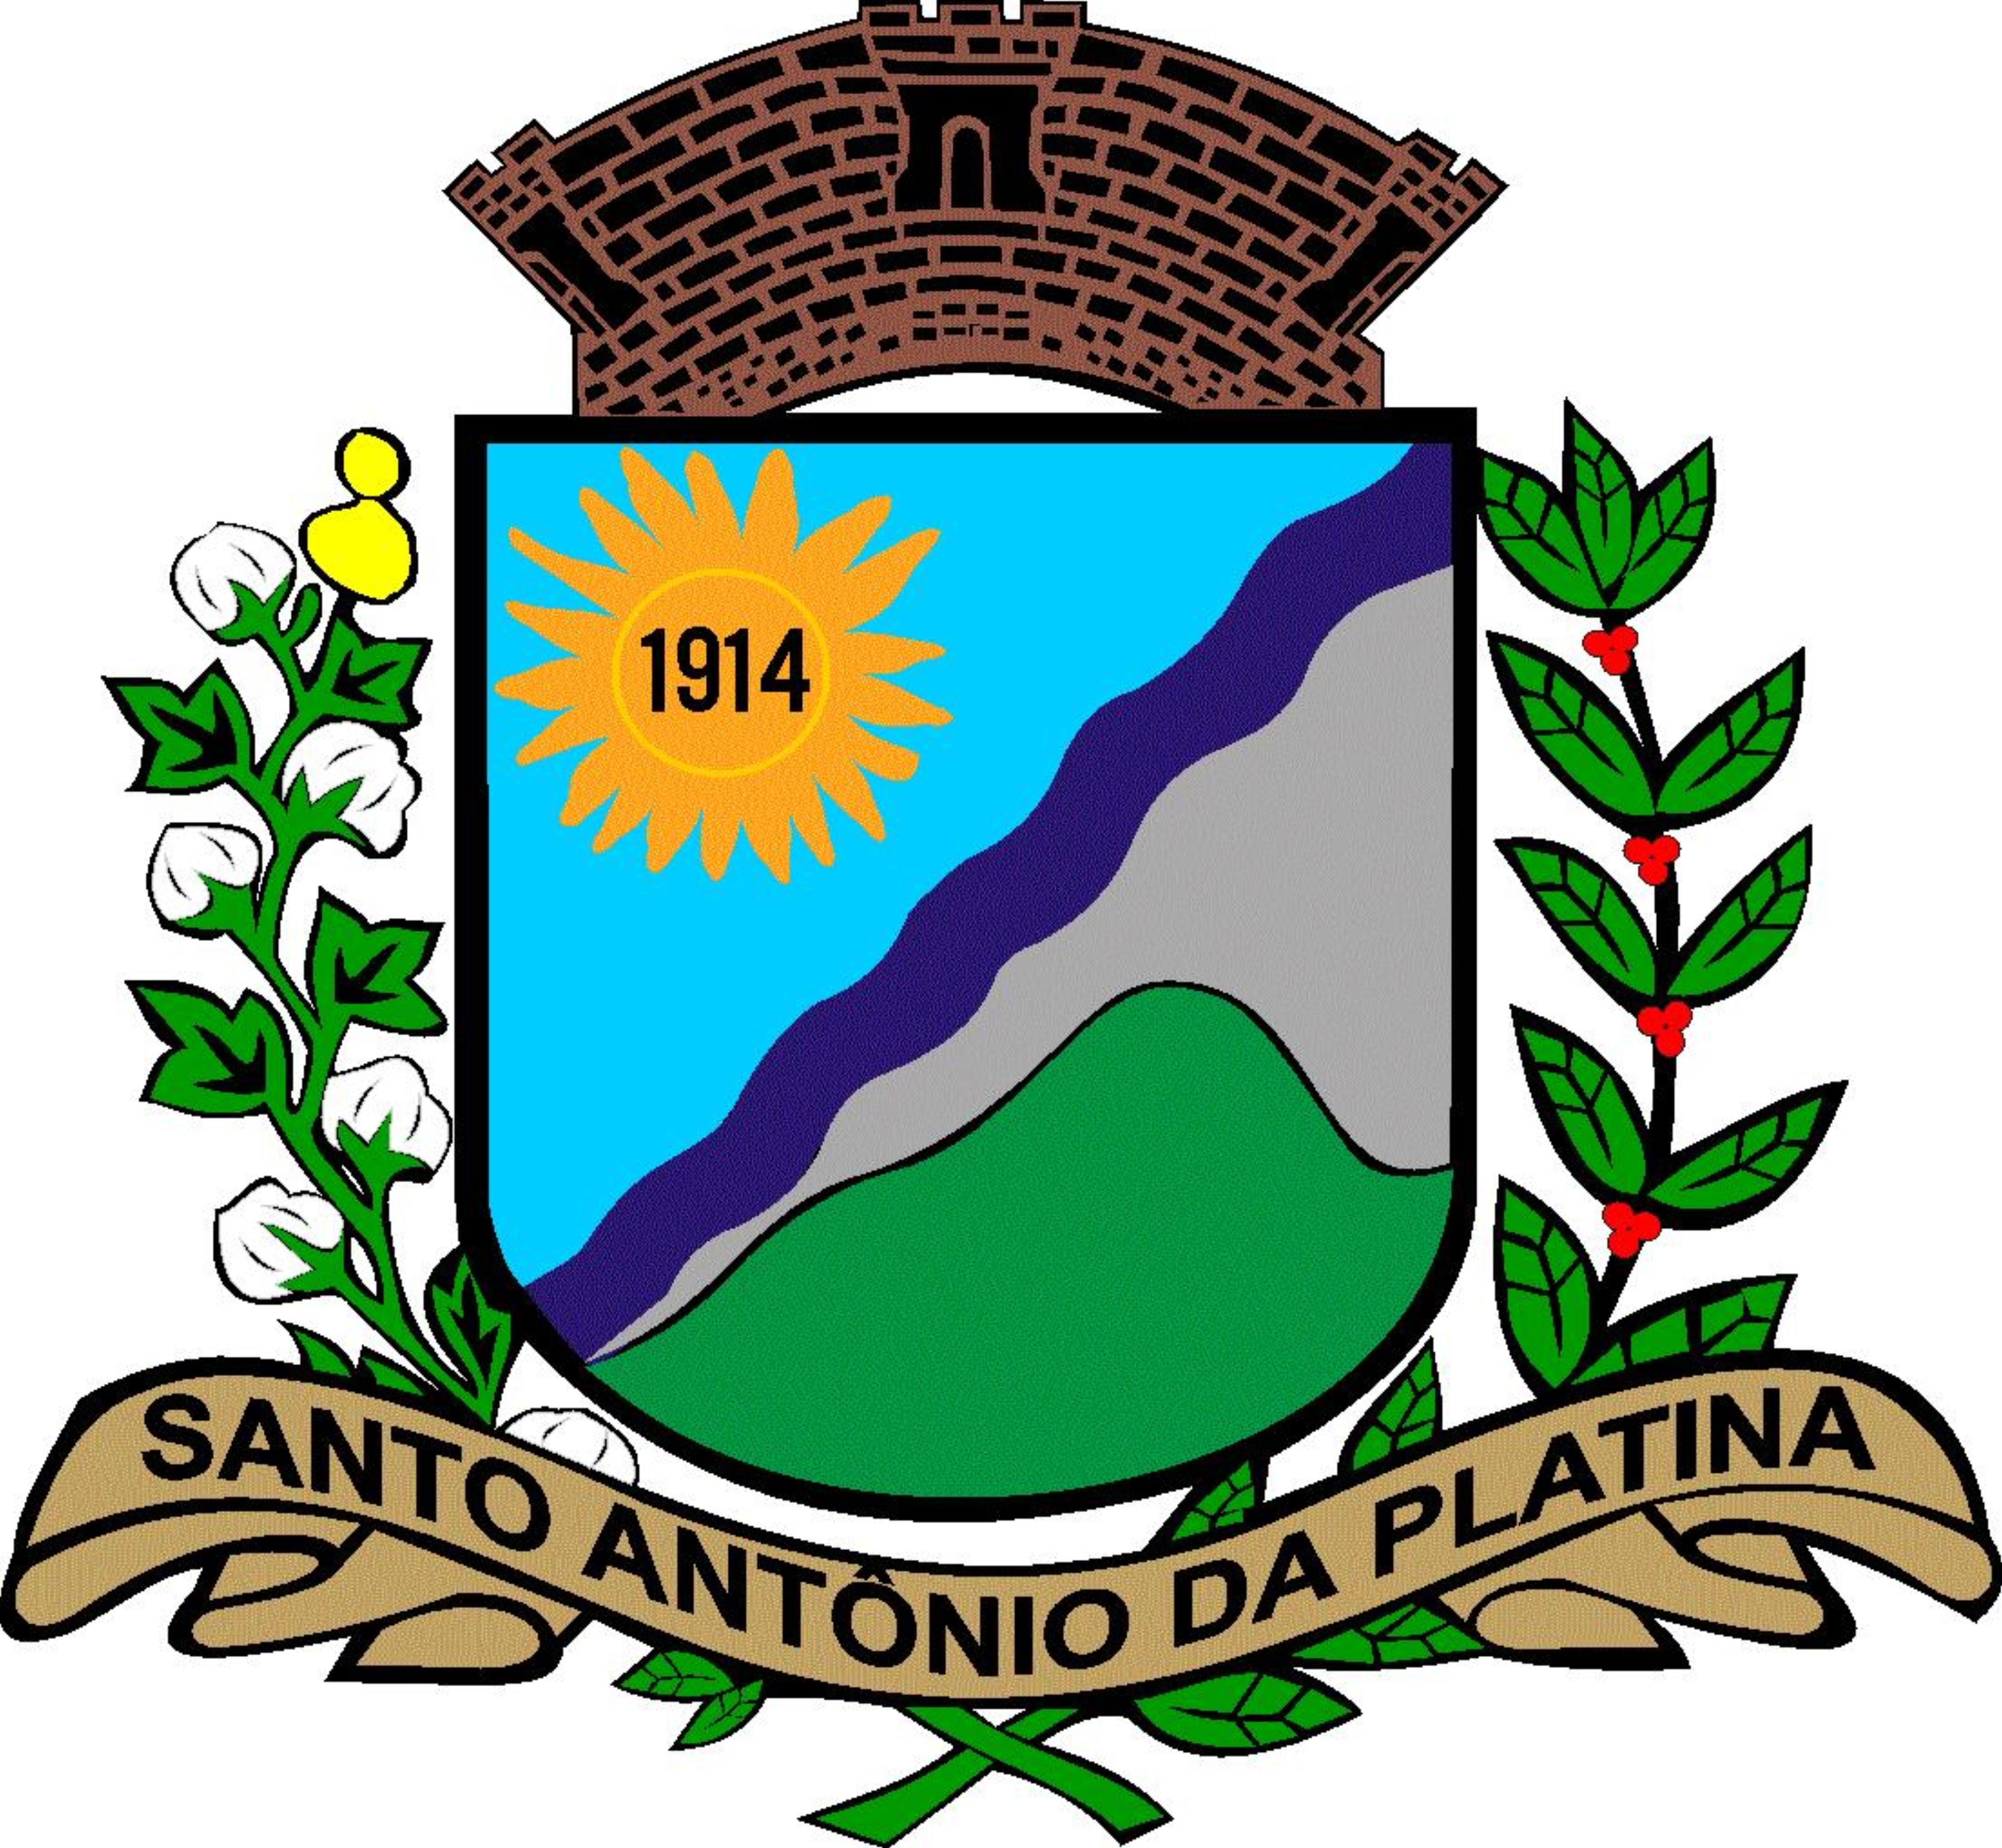 Santo Antônio da Platina